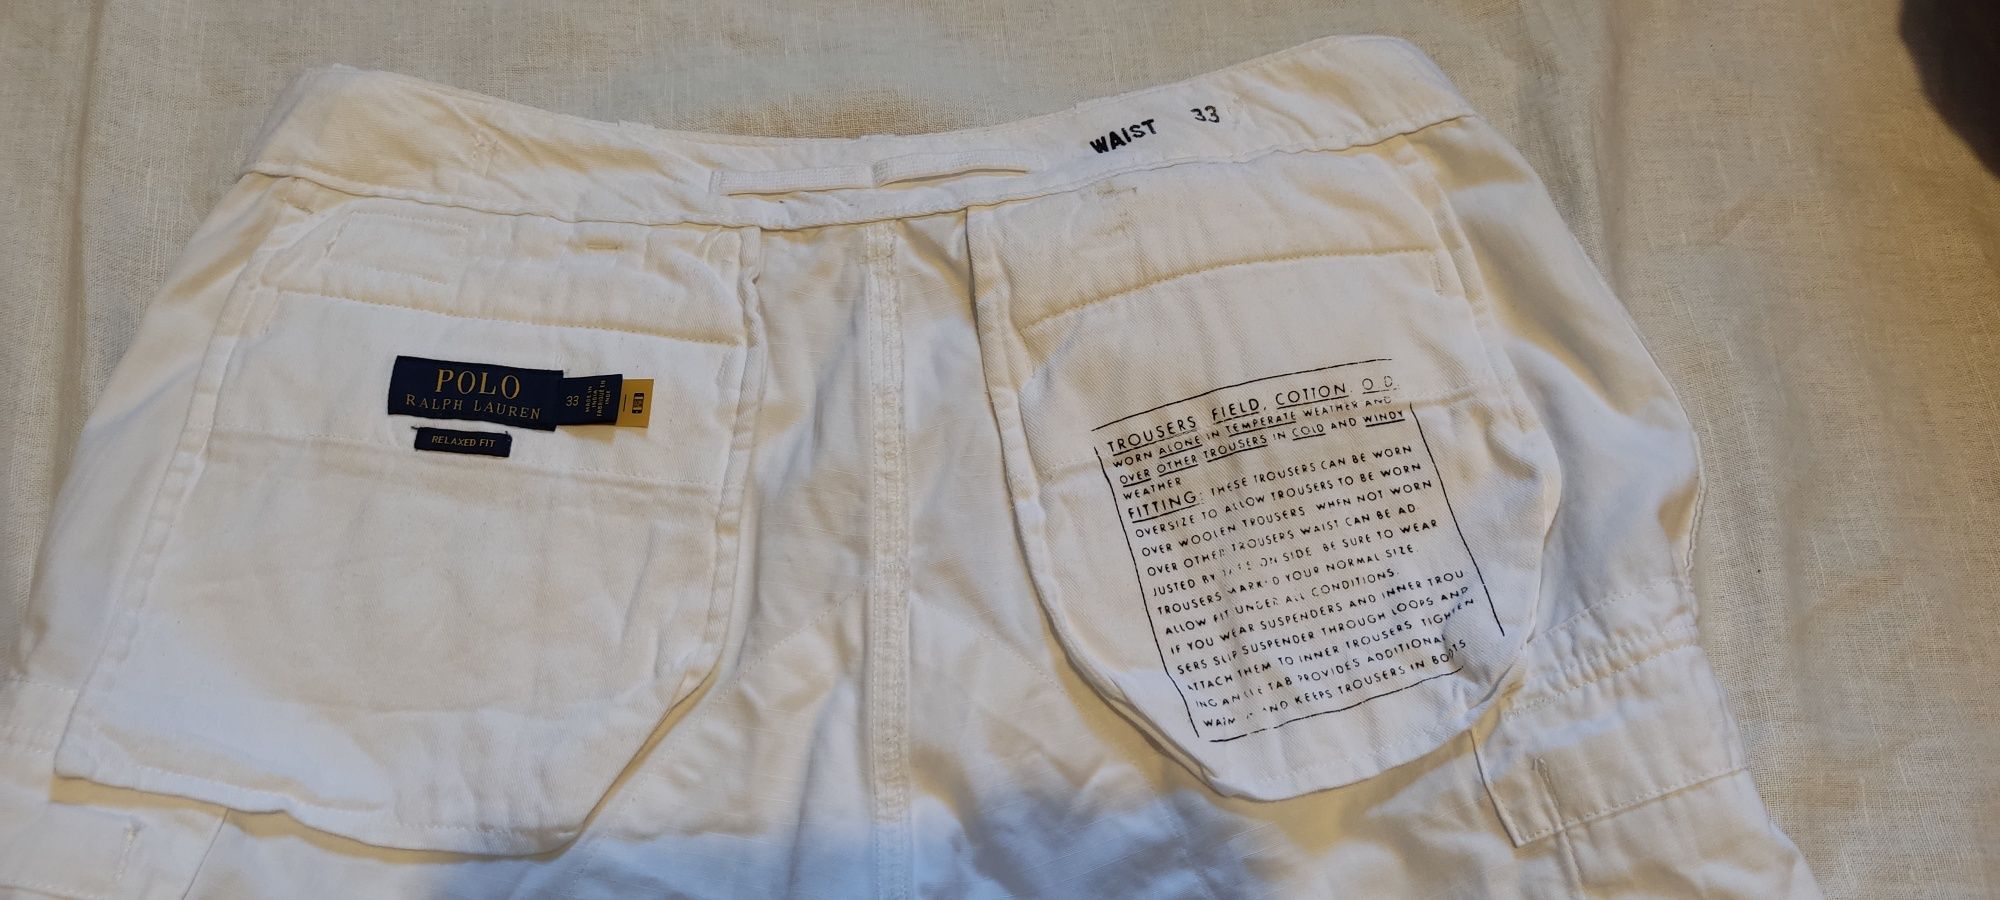 Pantaloni Polo Ralph Lauren Utility bărbat mărimea 33 cargo scurți